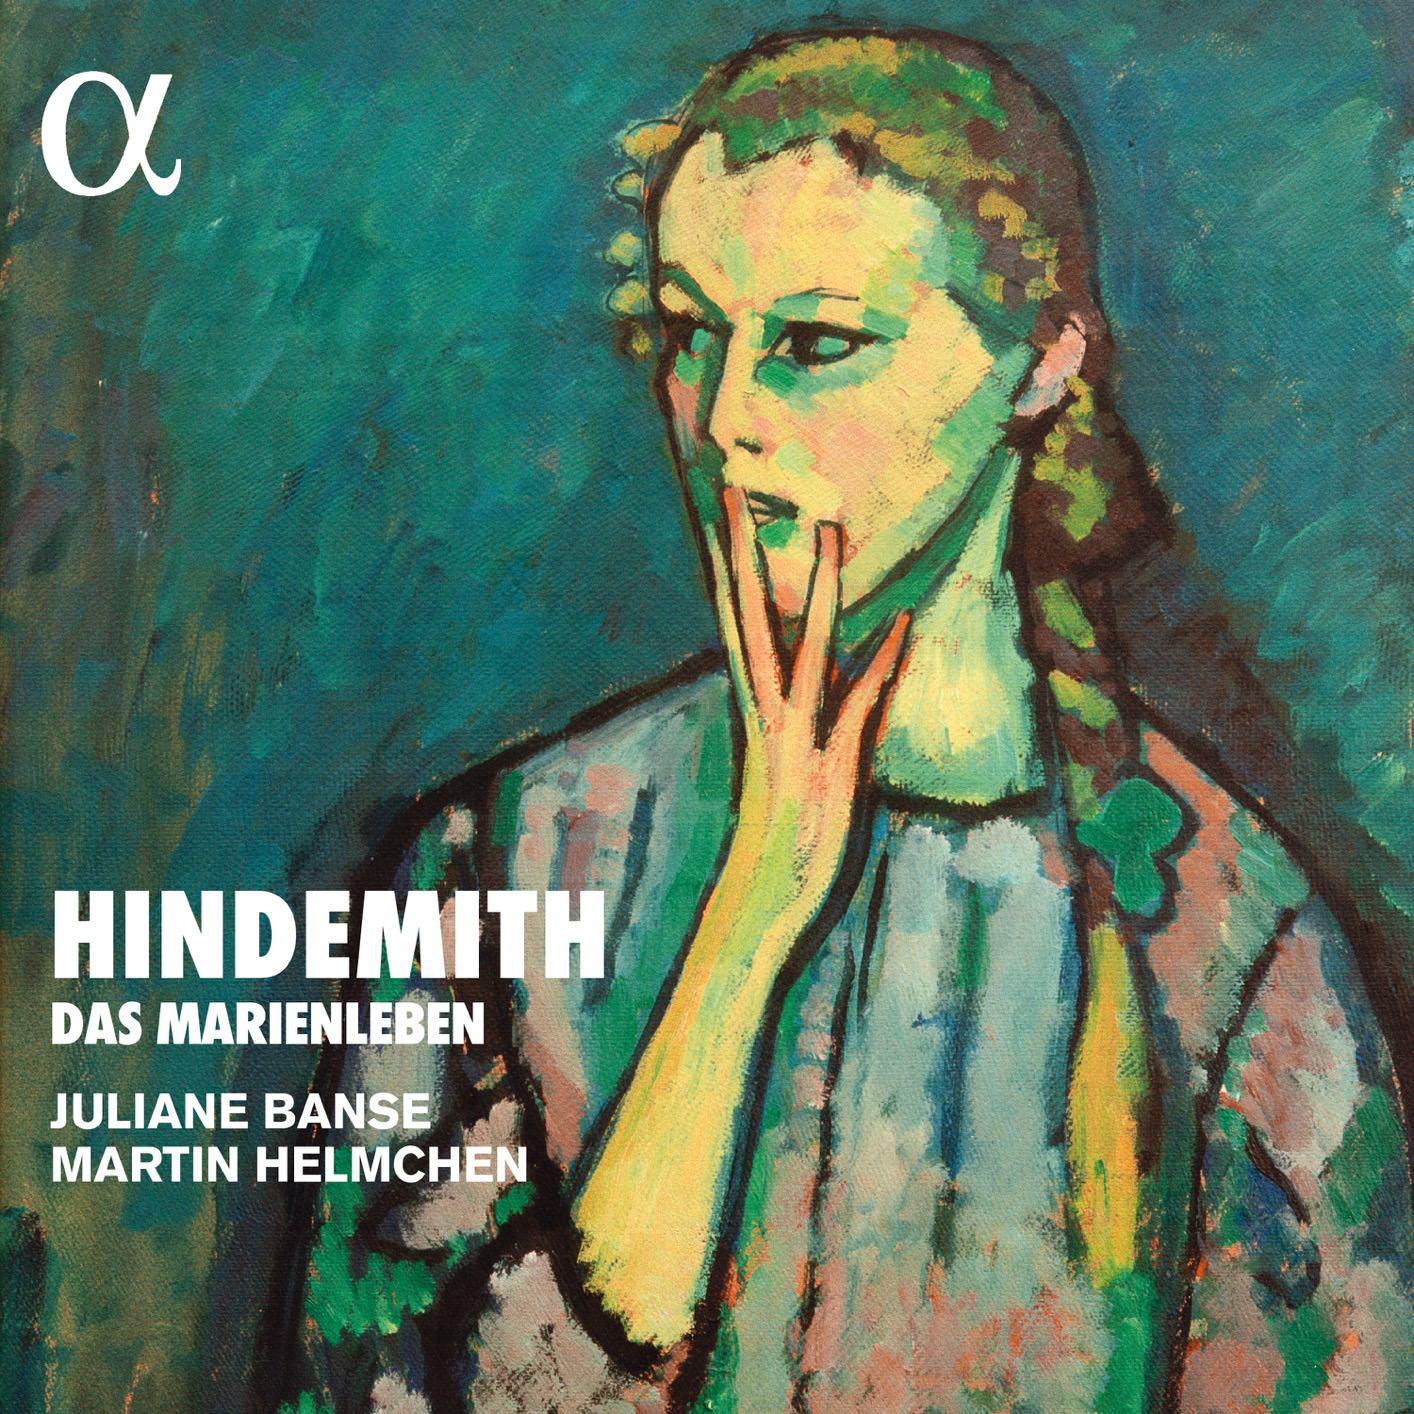 Juliane Banse & Martin Helmchen - Hindemith: Das Marienleben, Op. 27 (2018) [FLAC 24bit/96kHz]